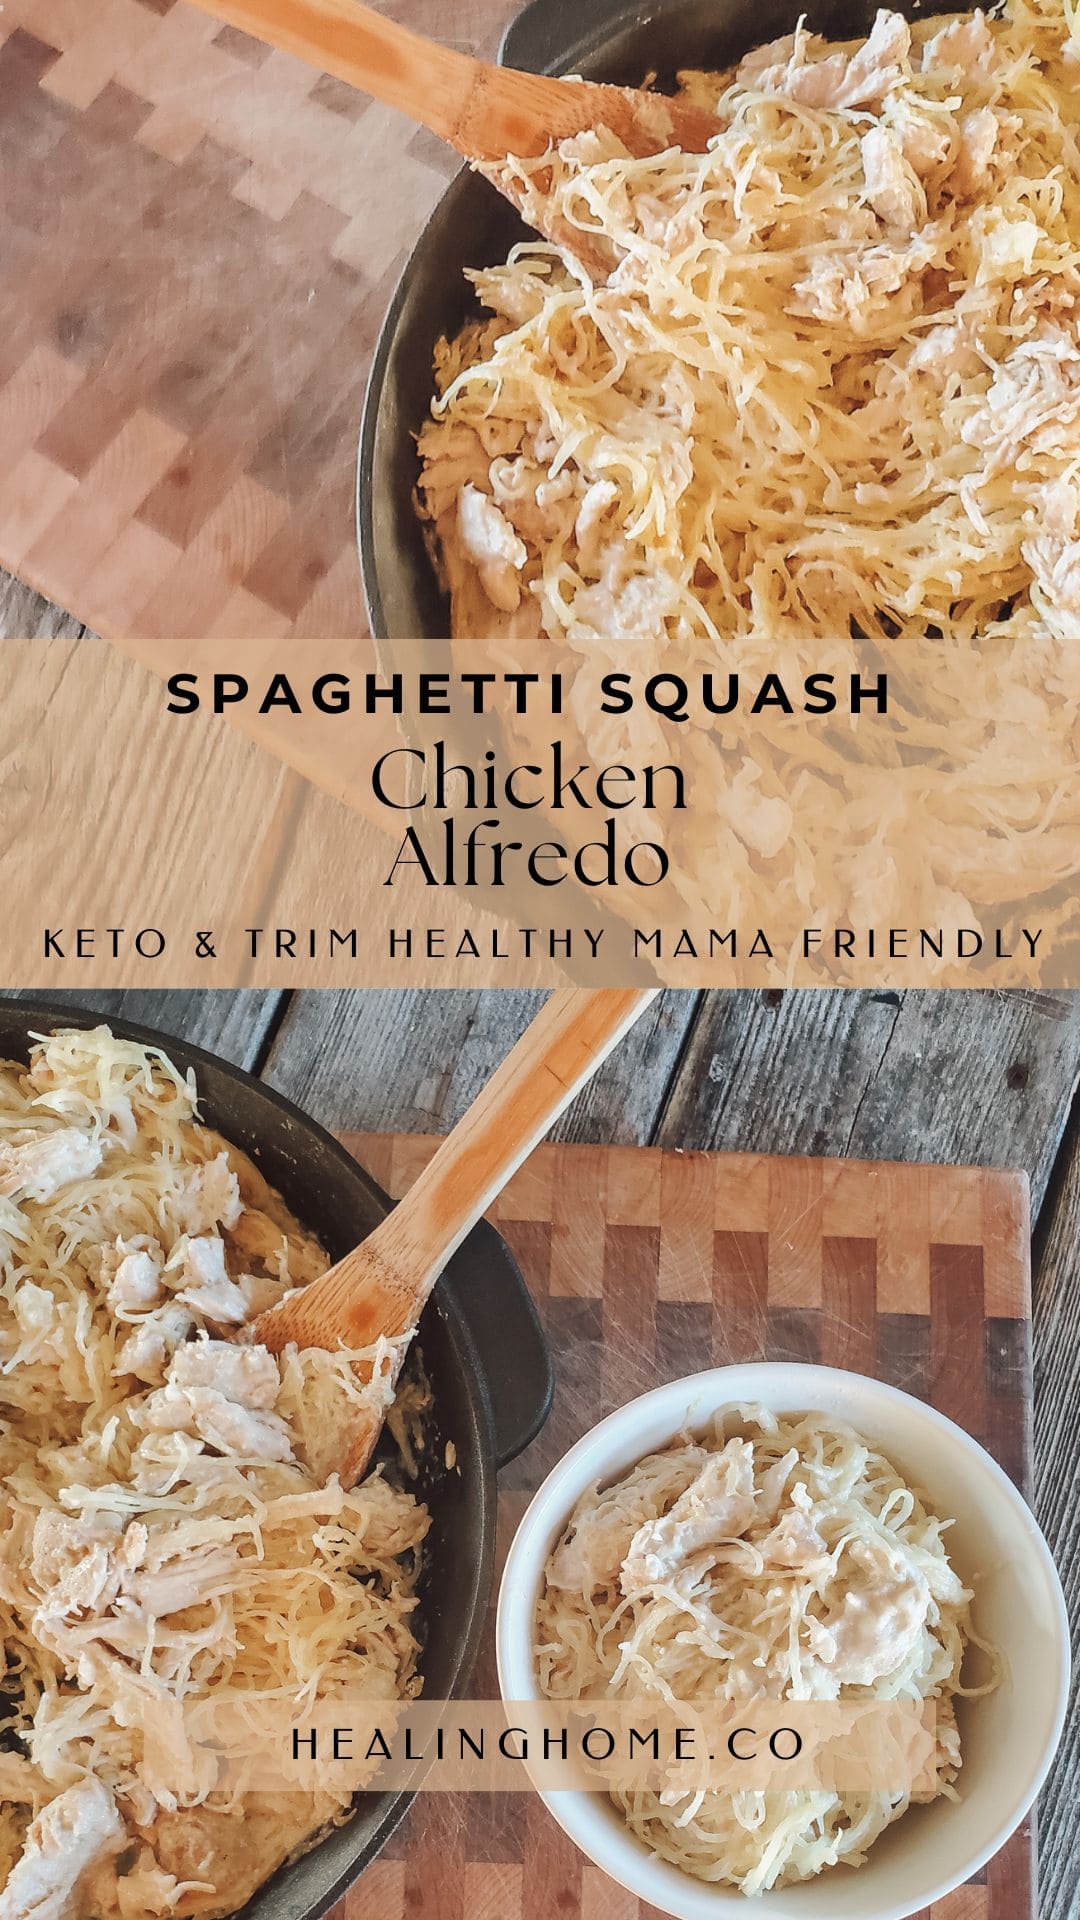 Spaghetti squash chicken alfredo